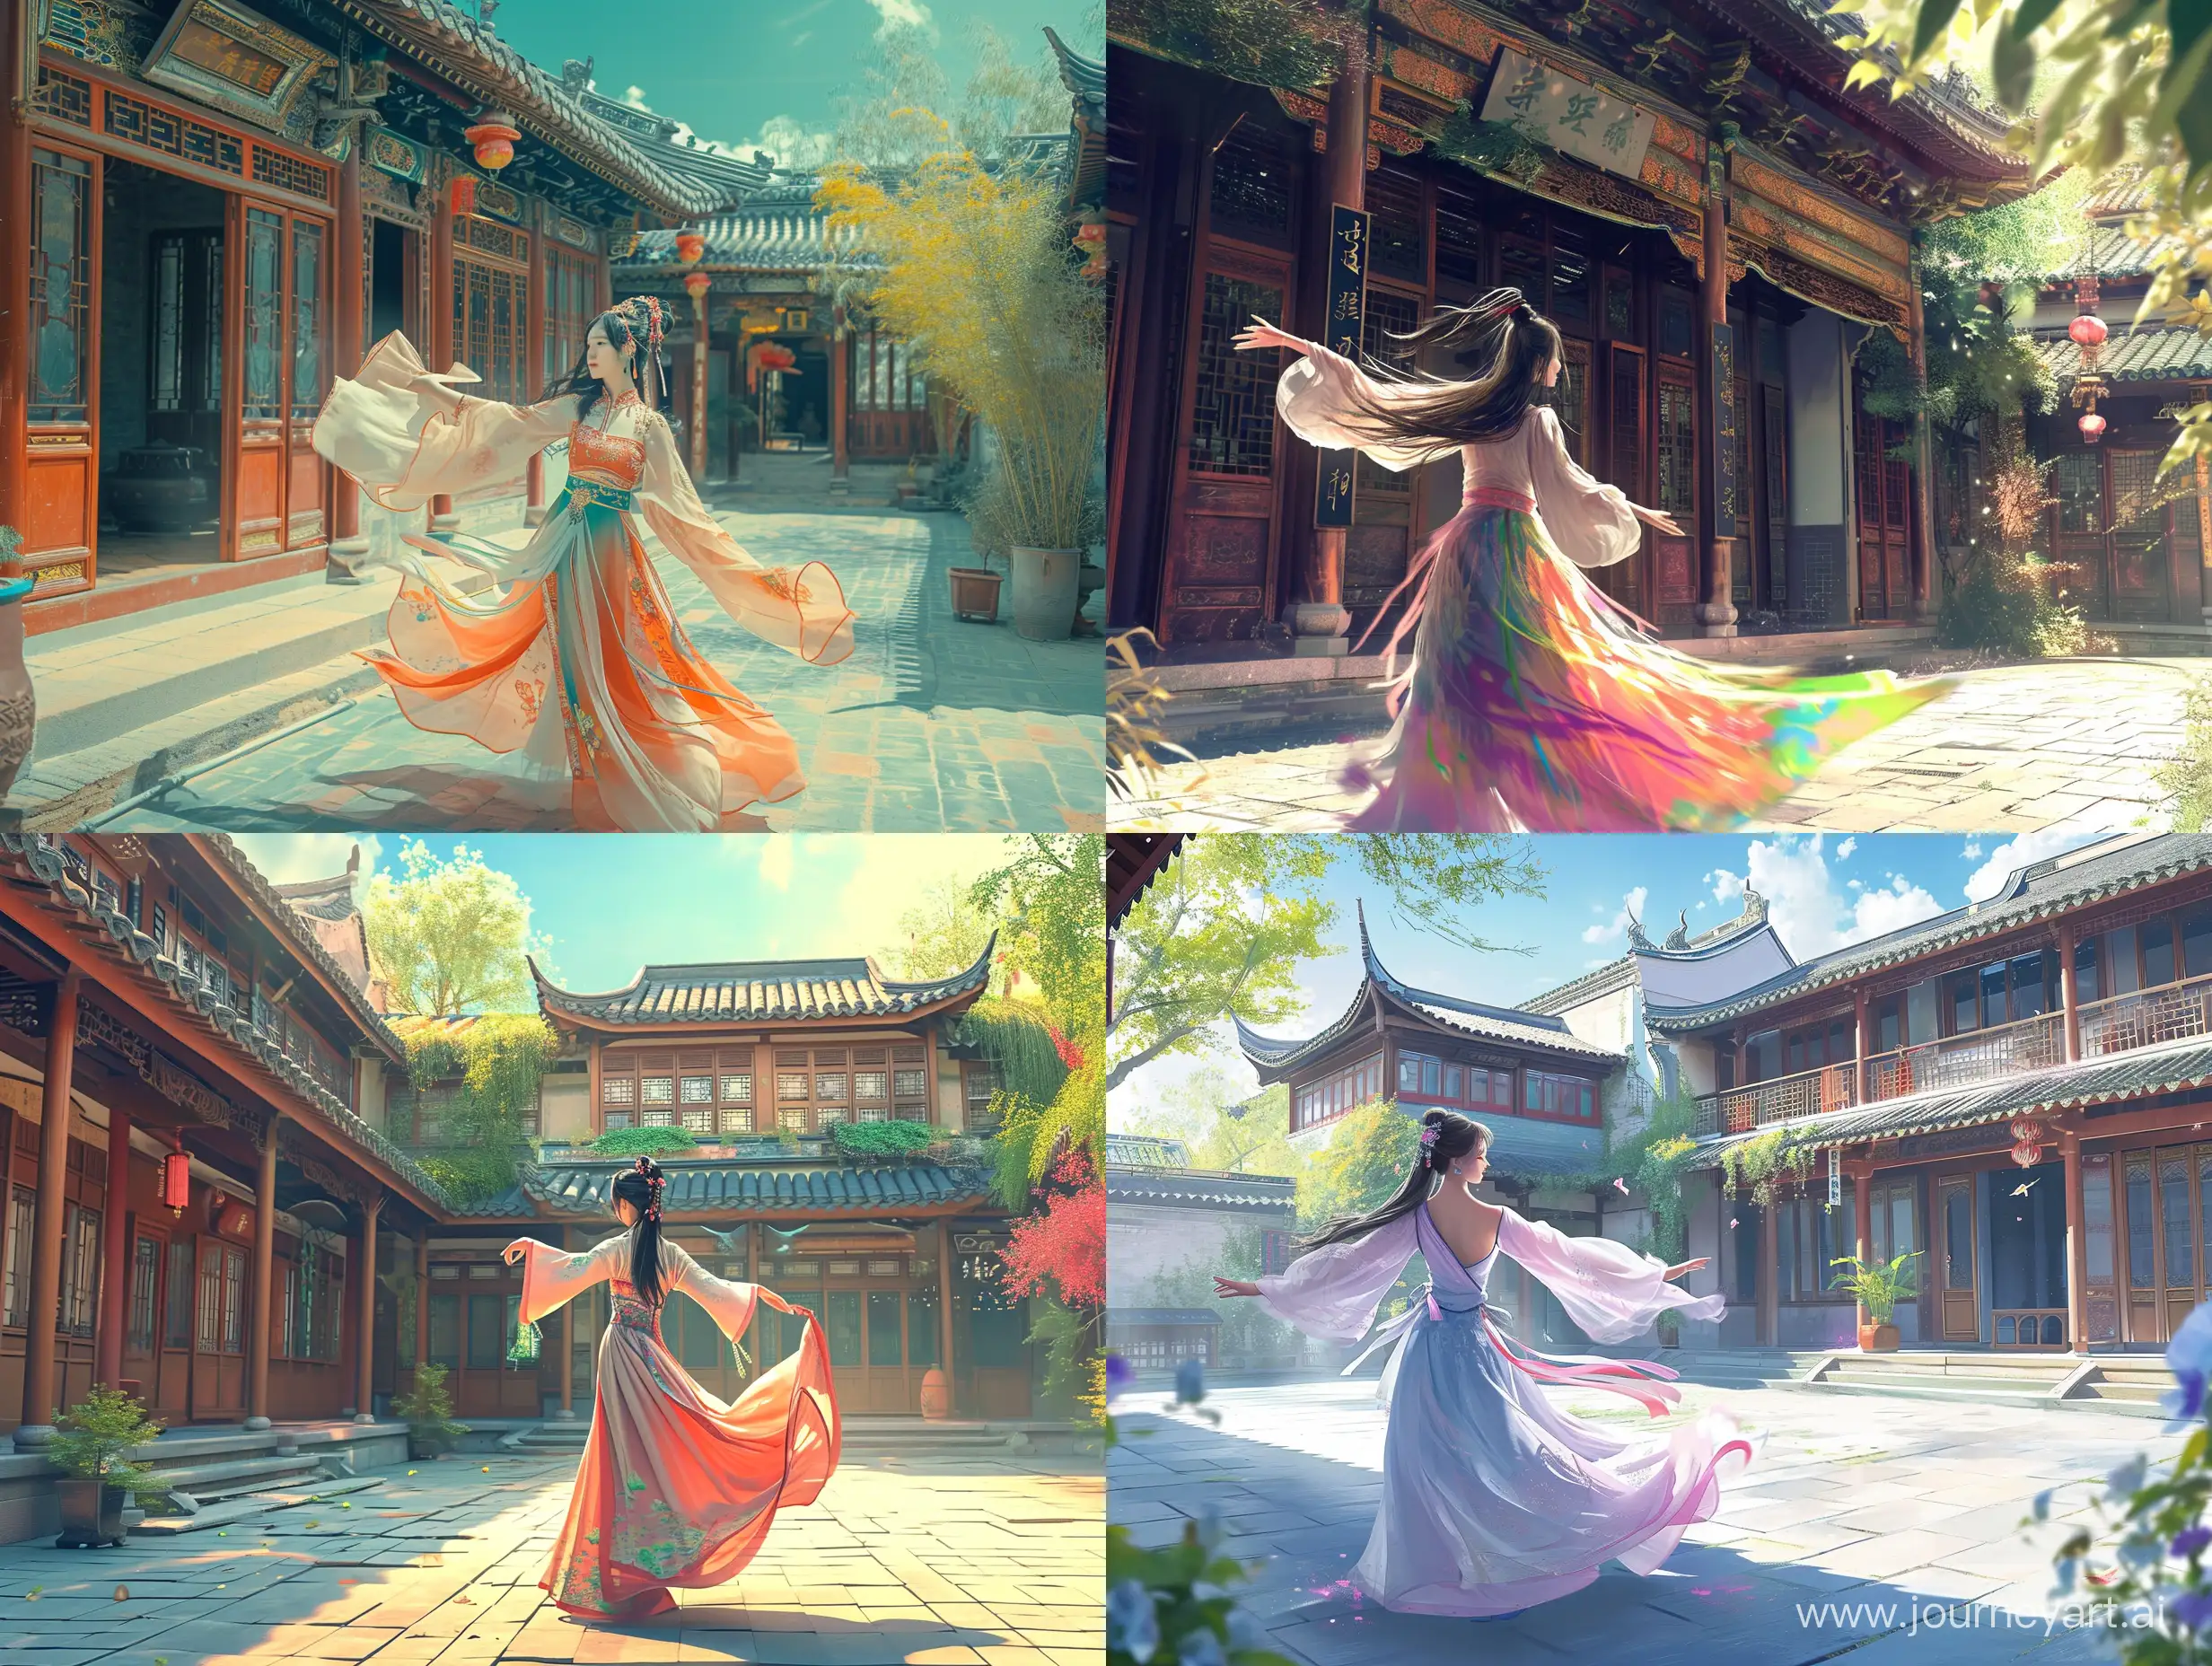 一座府邸的院内，一个美女正在跳舞，彩色中国风，水墨画风格，二次元漫画，高清，高级感，大师之作，古代，东方美学。